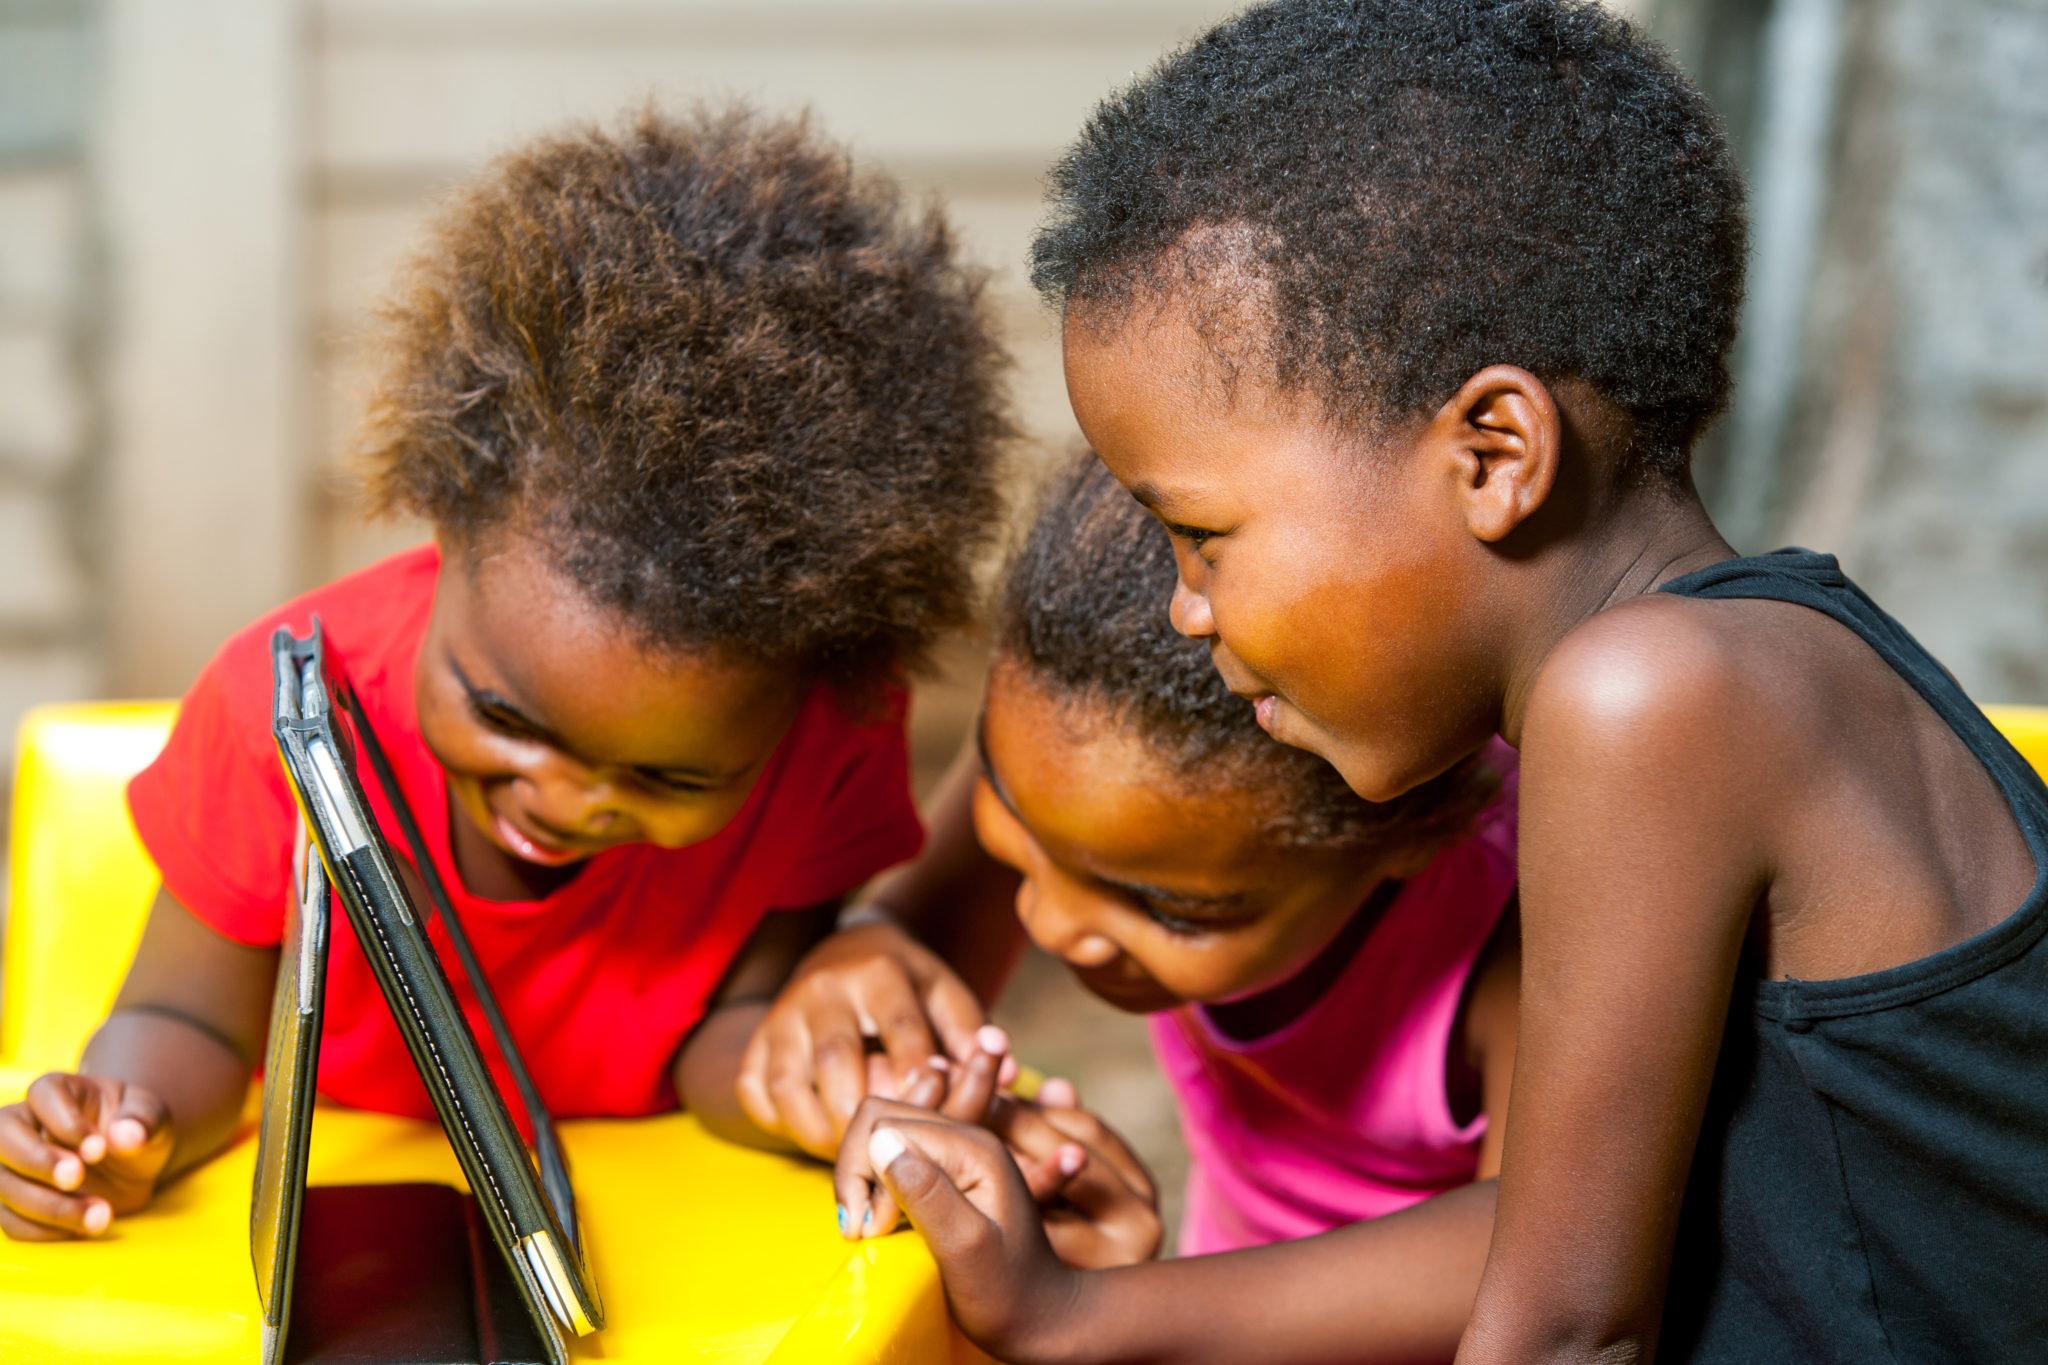 Moodle capacita educadores em Ruanda, East Africa Image